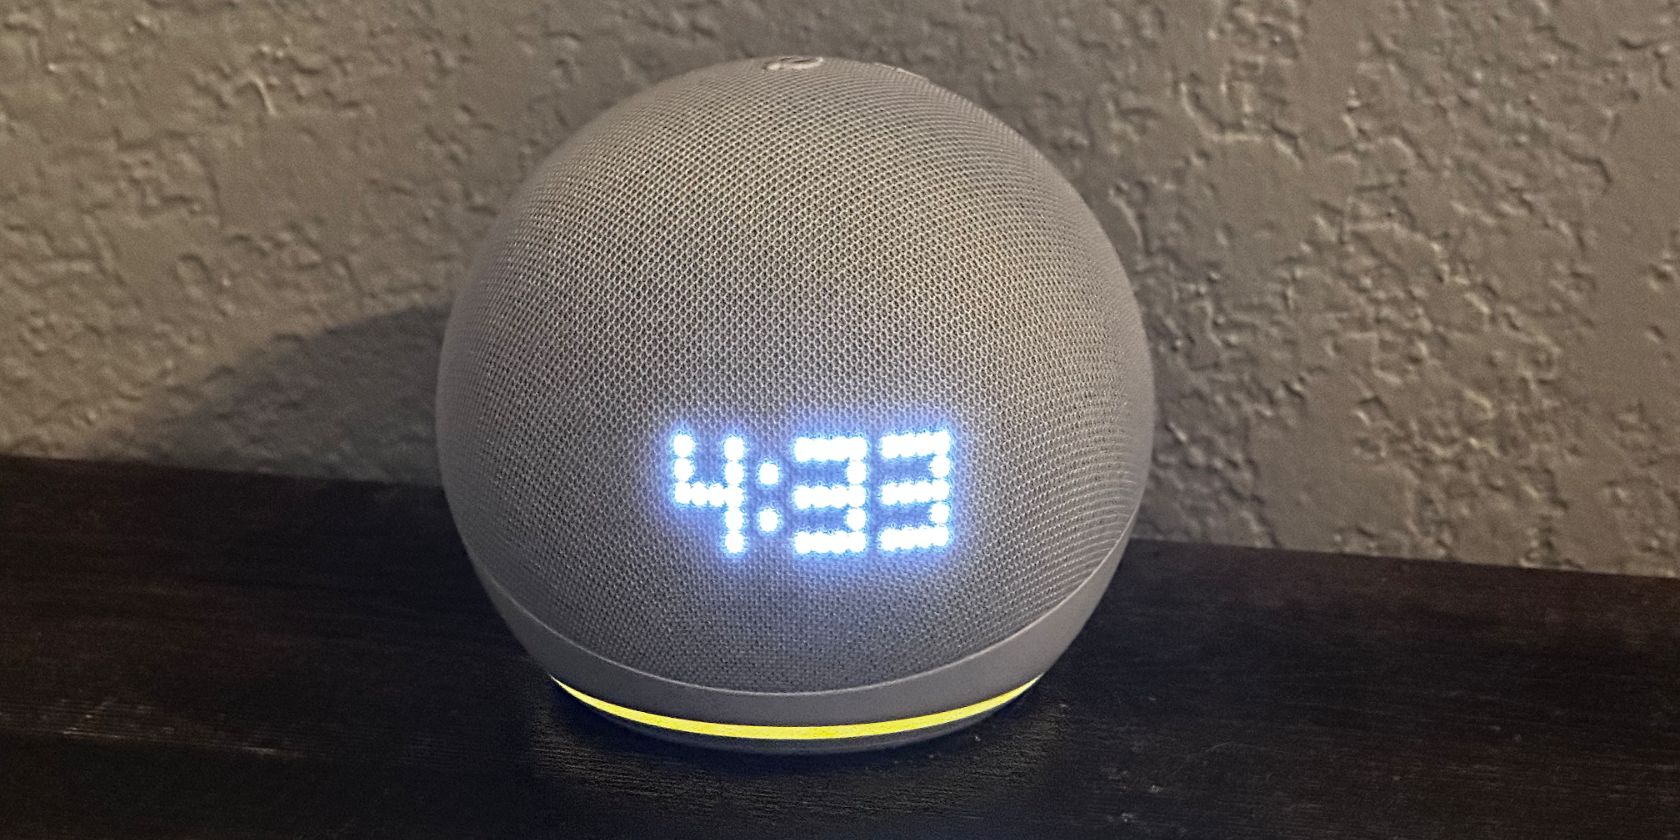 Echo Dot Smart Speaker 2022: 5 Best New Features